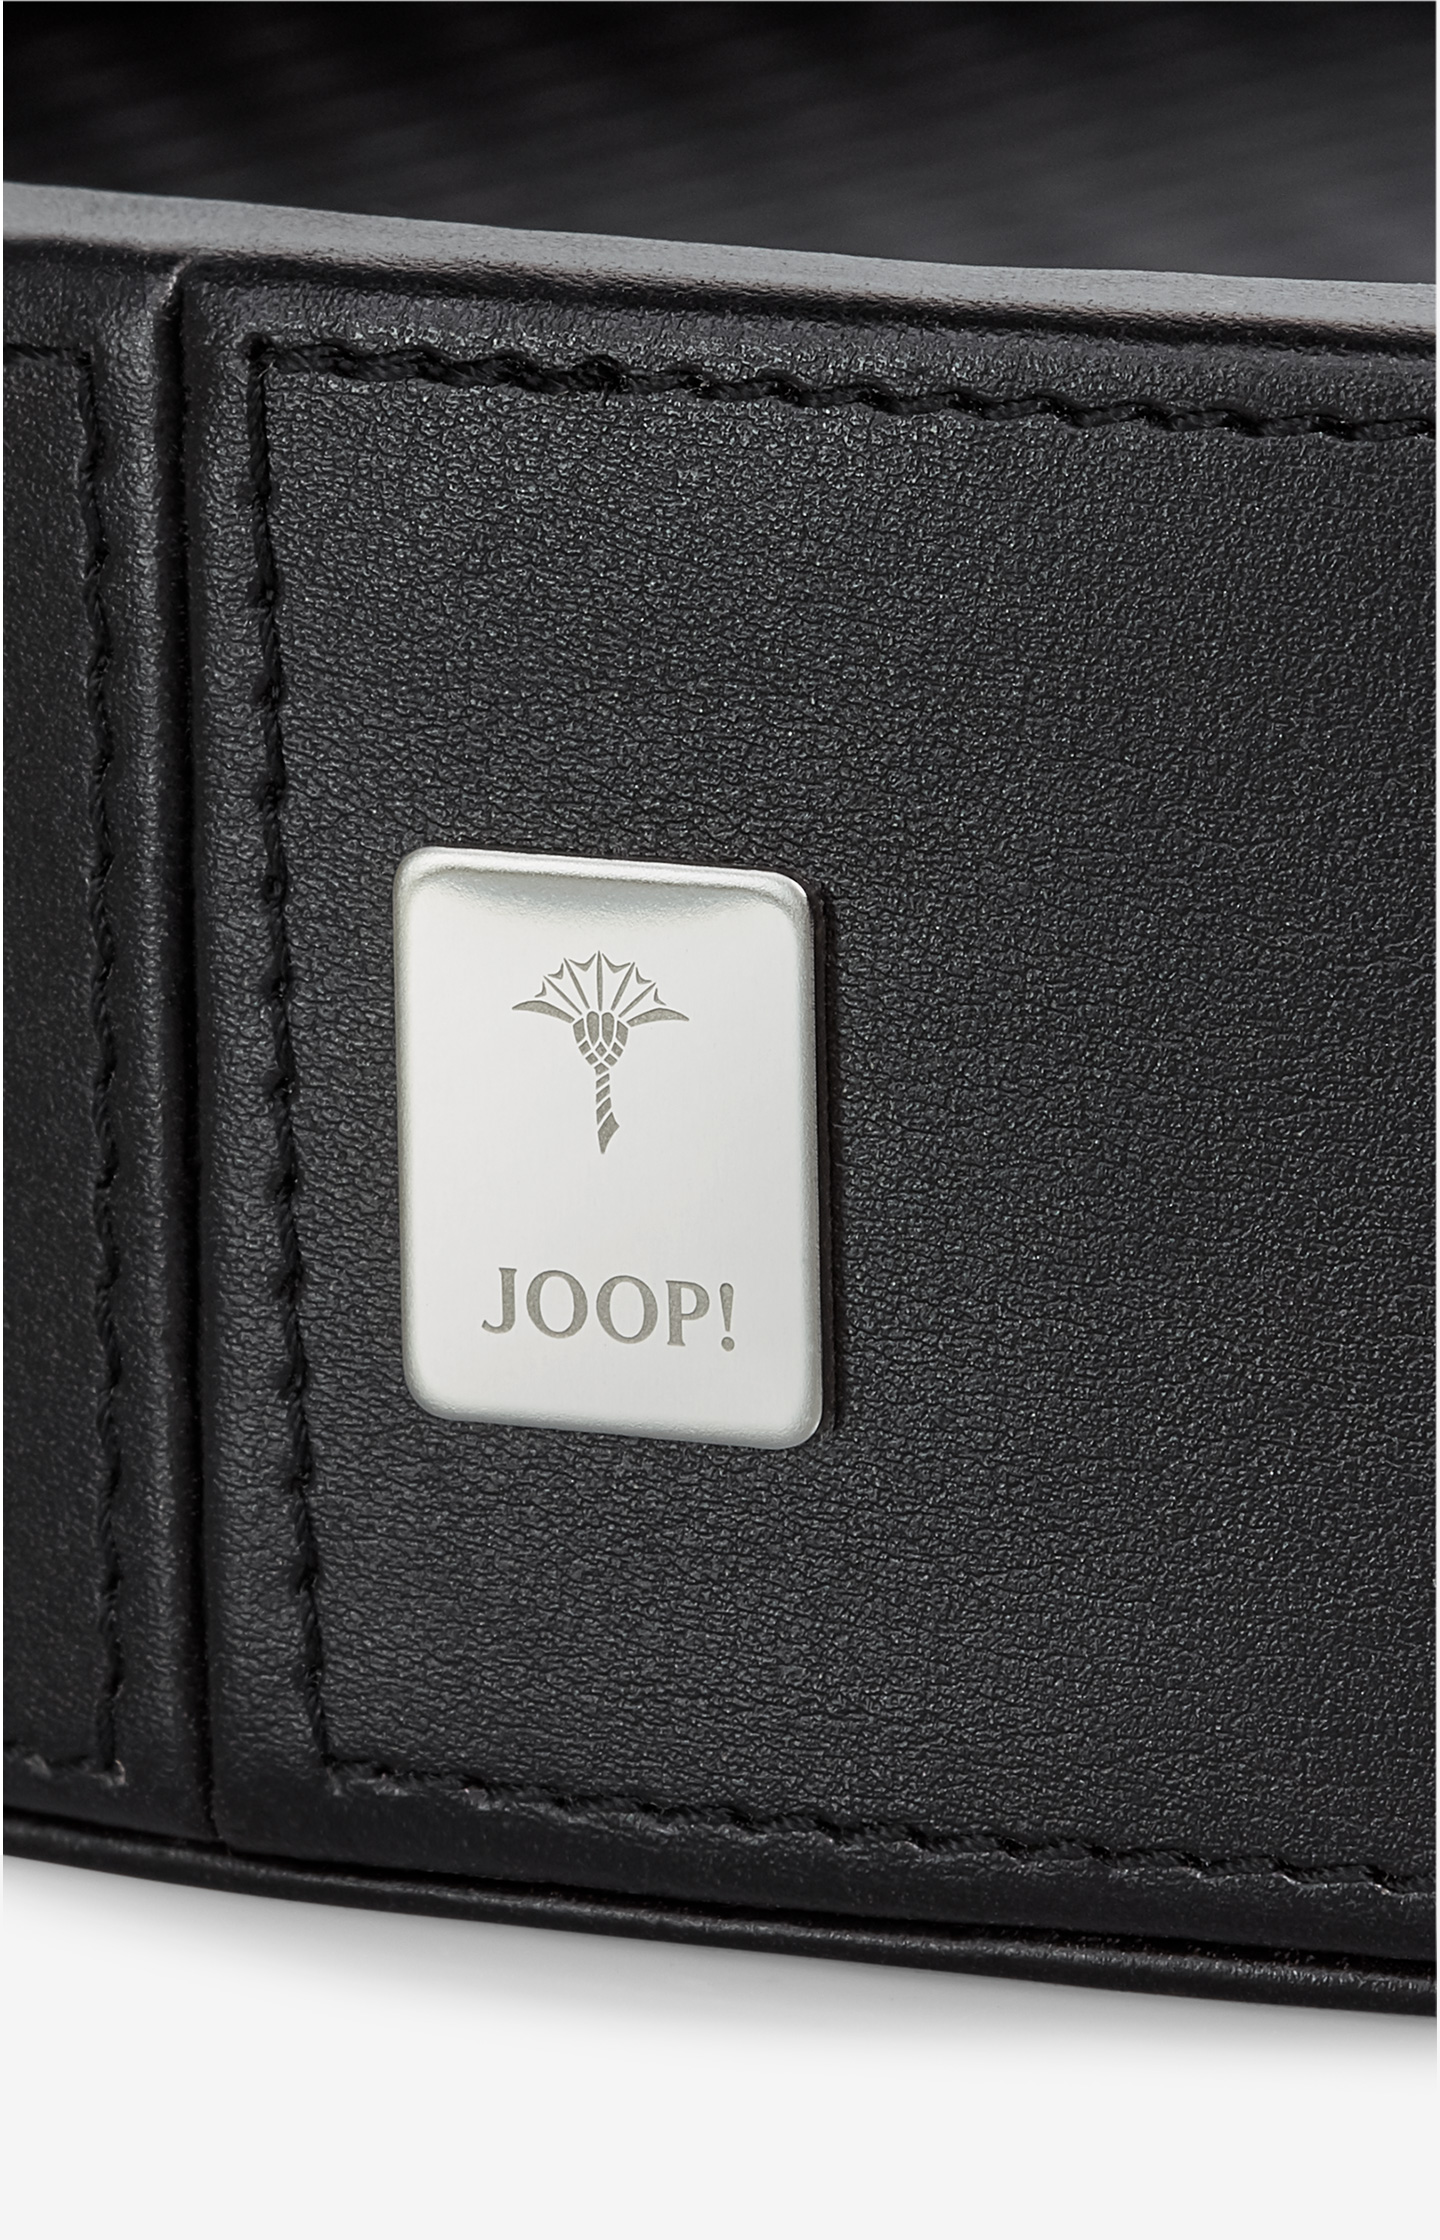 JOOP! Homeline - Rundes Tablett in Schwarz, groß - im JOOP! Online-Shop